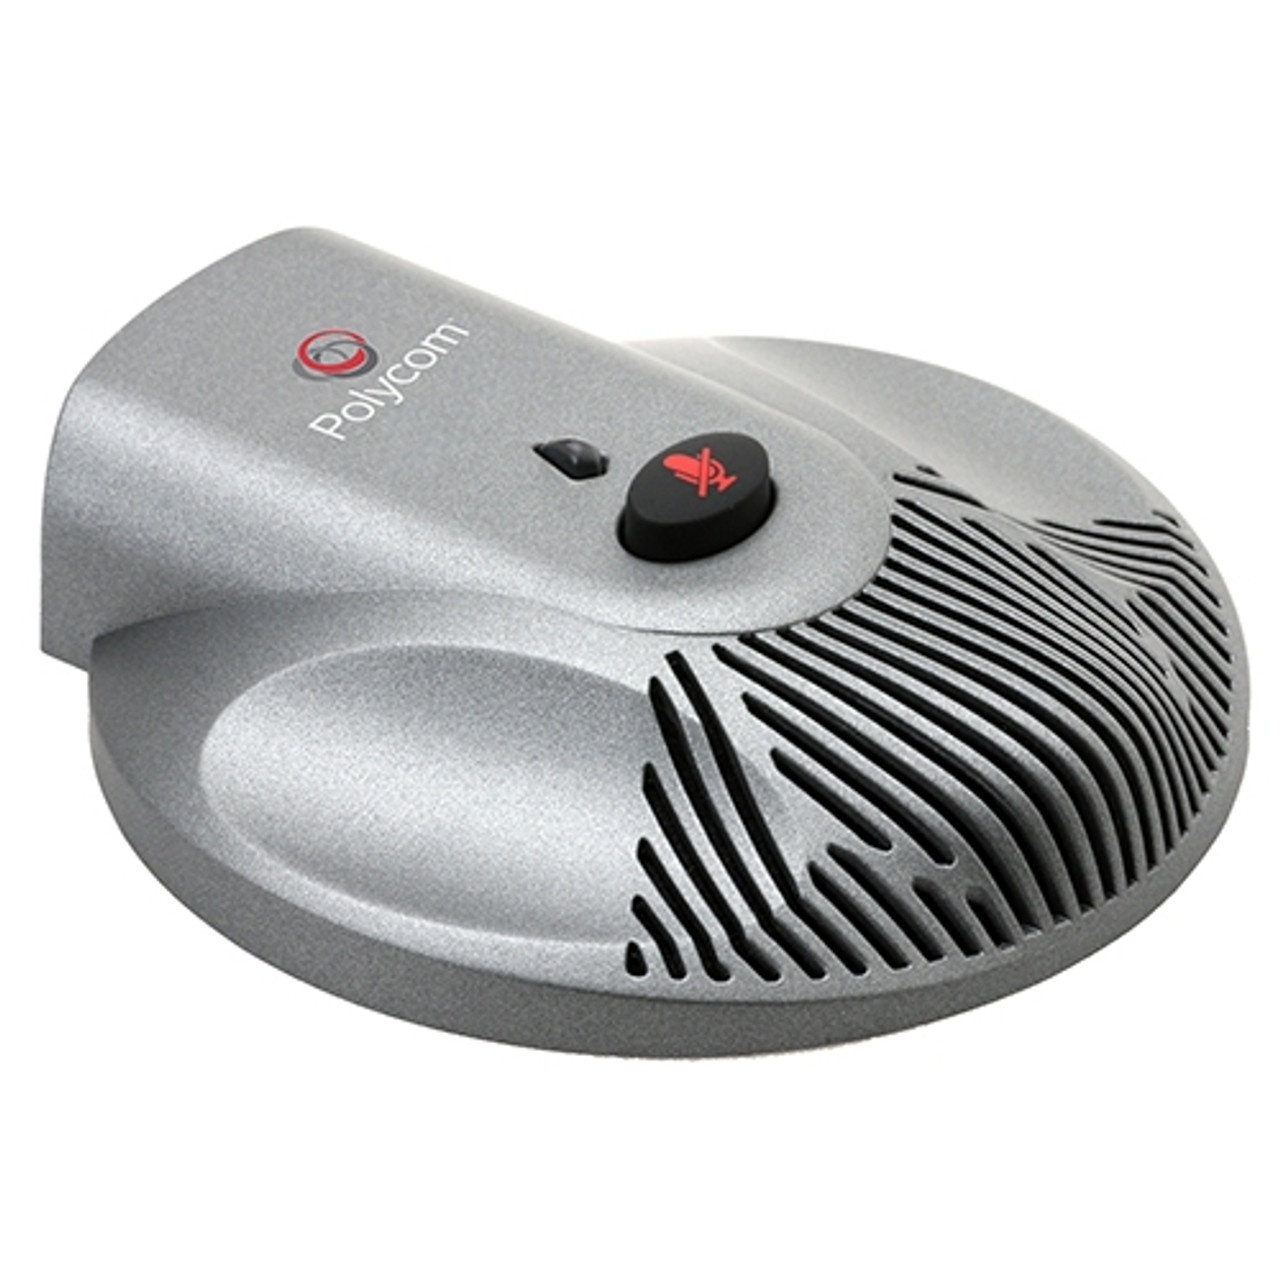 Polycom SoundStation2 Expansion Microphone Kit - 2200-16155-001